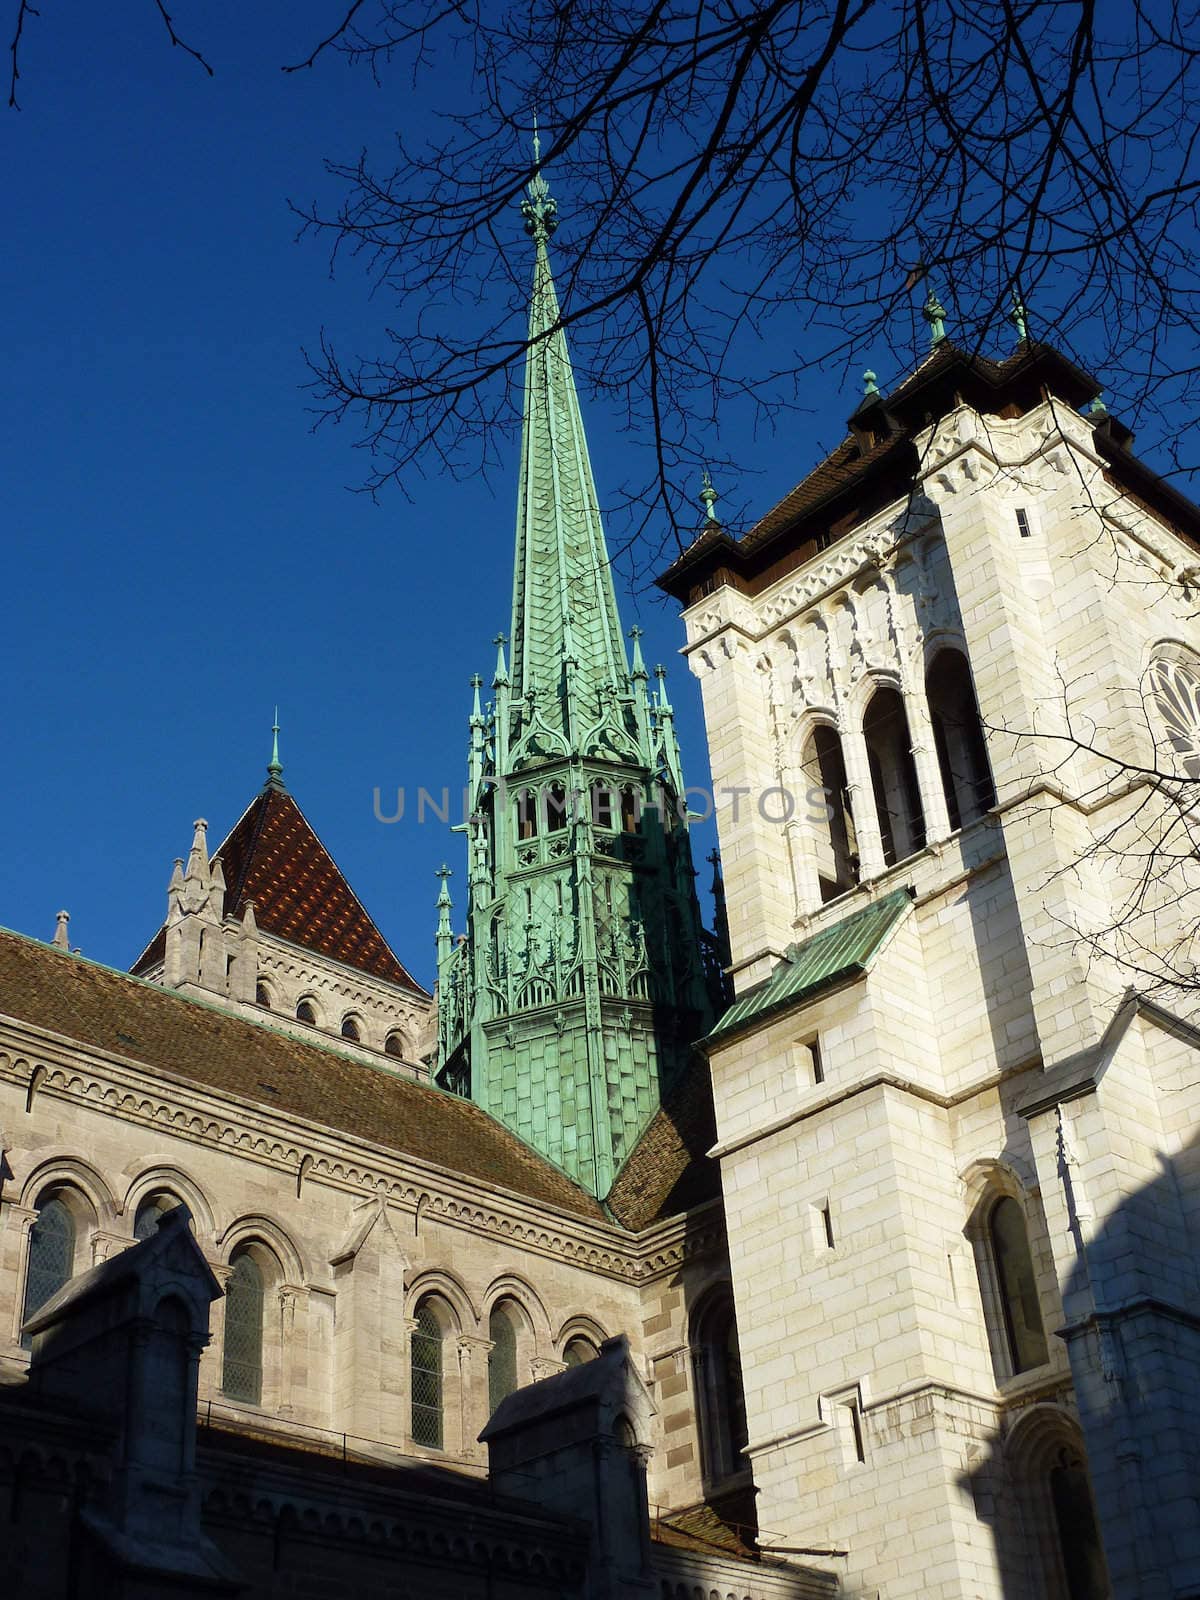 Belltower of Saint-Pierre cathedral in Geneva, Switzerland